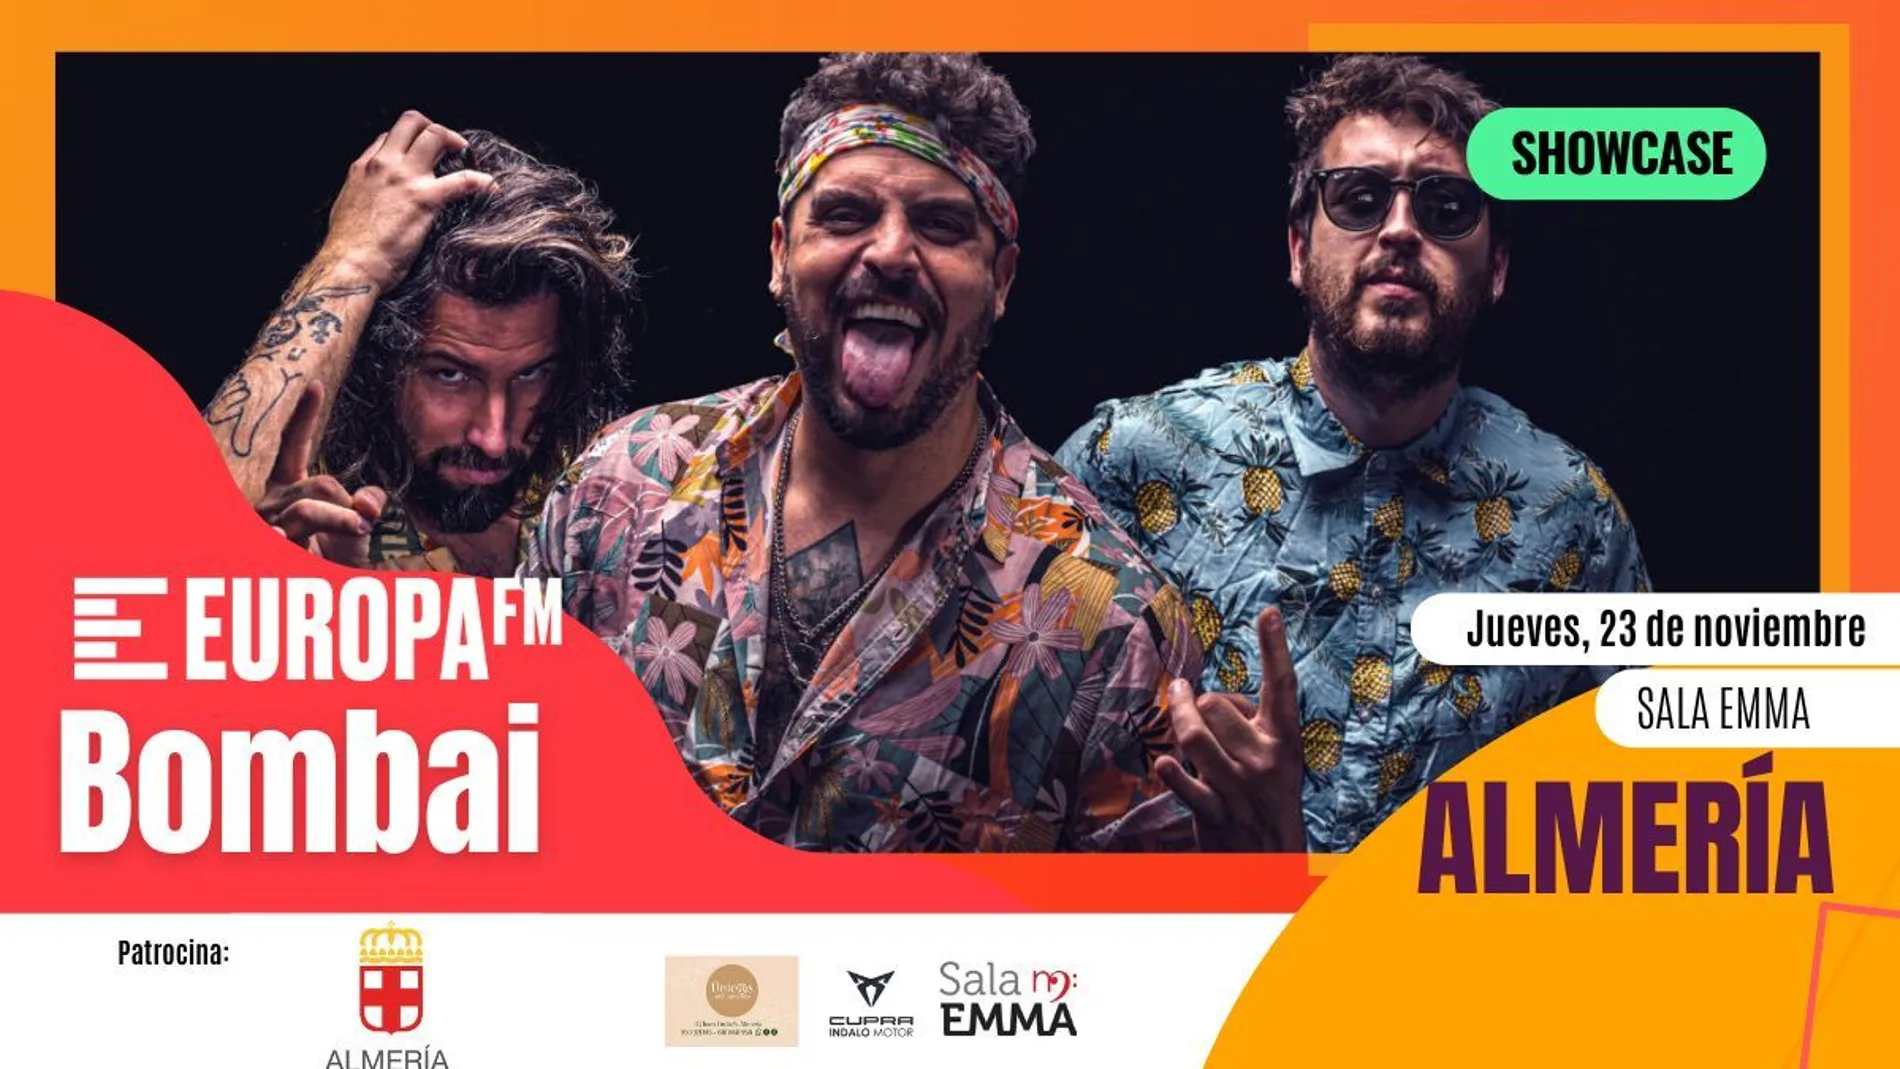 Bombai te invita a un showcase exclusivo el jueves 23 de noviembre en Almería